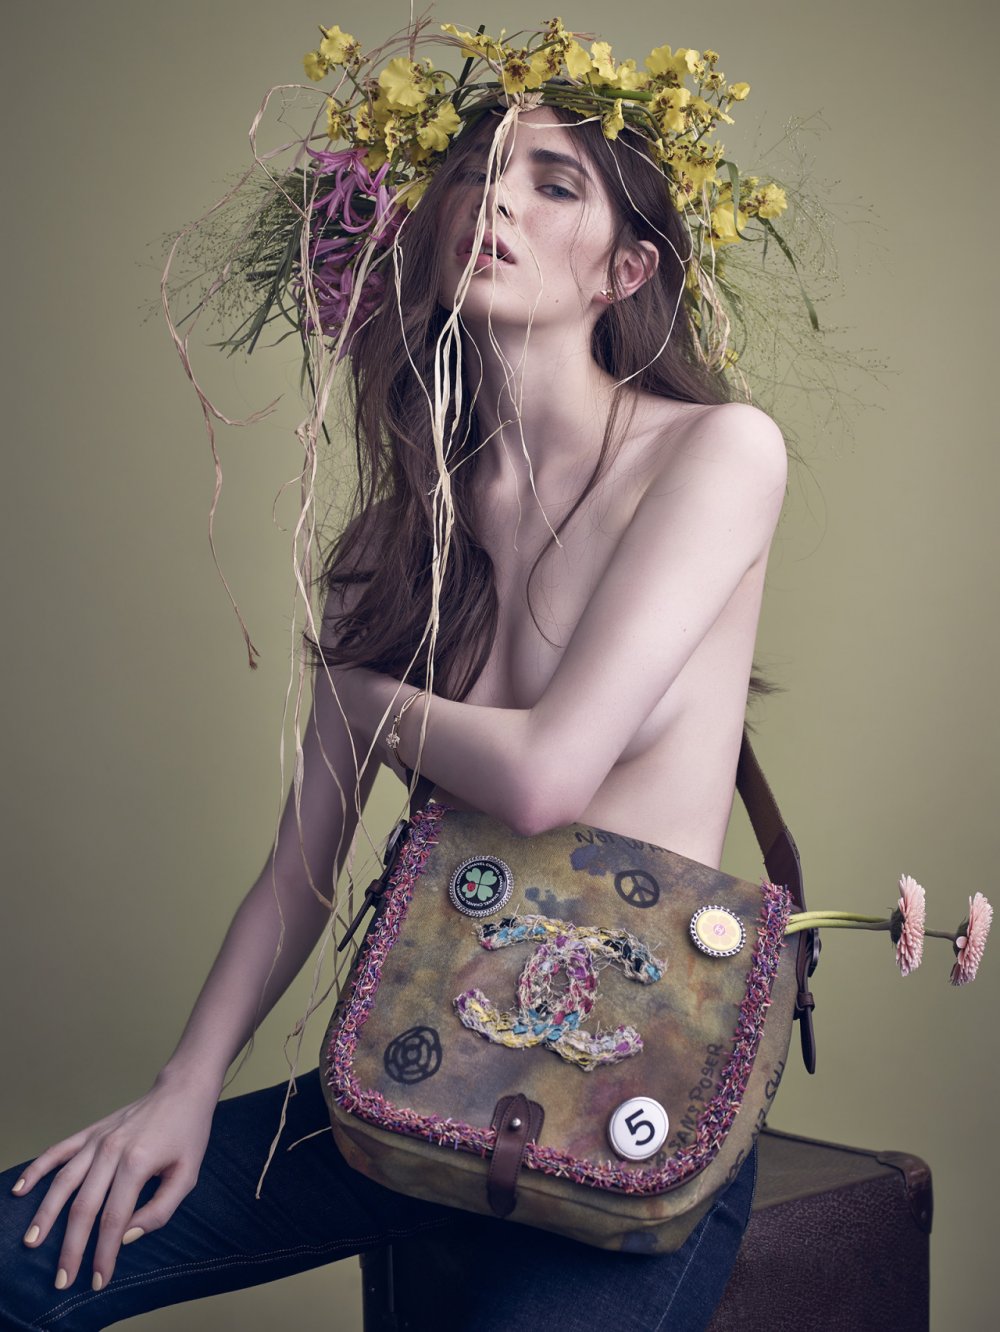 Sasha Dmitrieva for Vogue Russia April 2015. :: WhyNot Blog